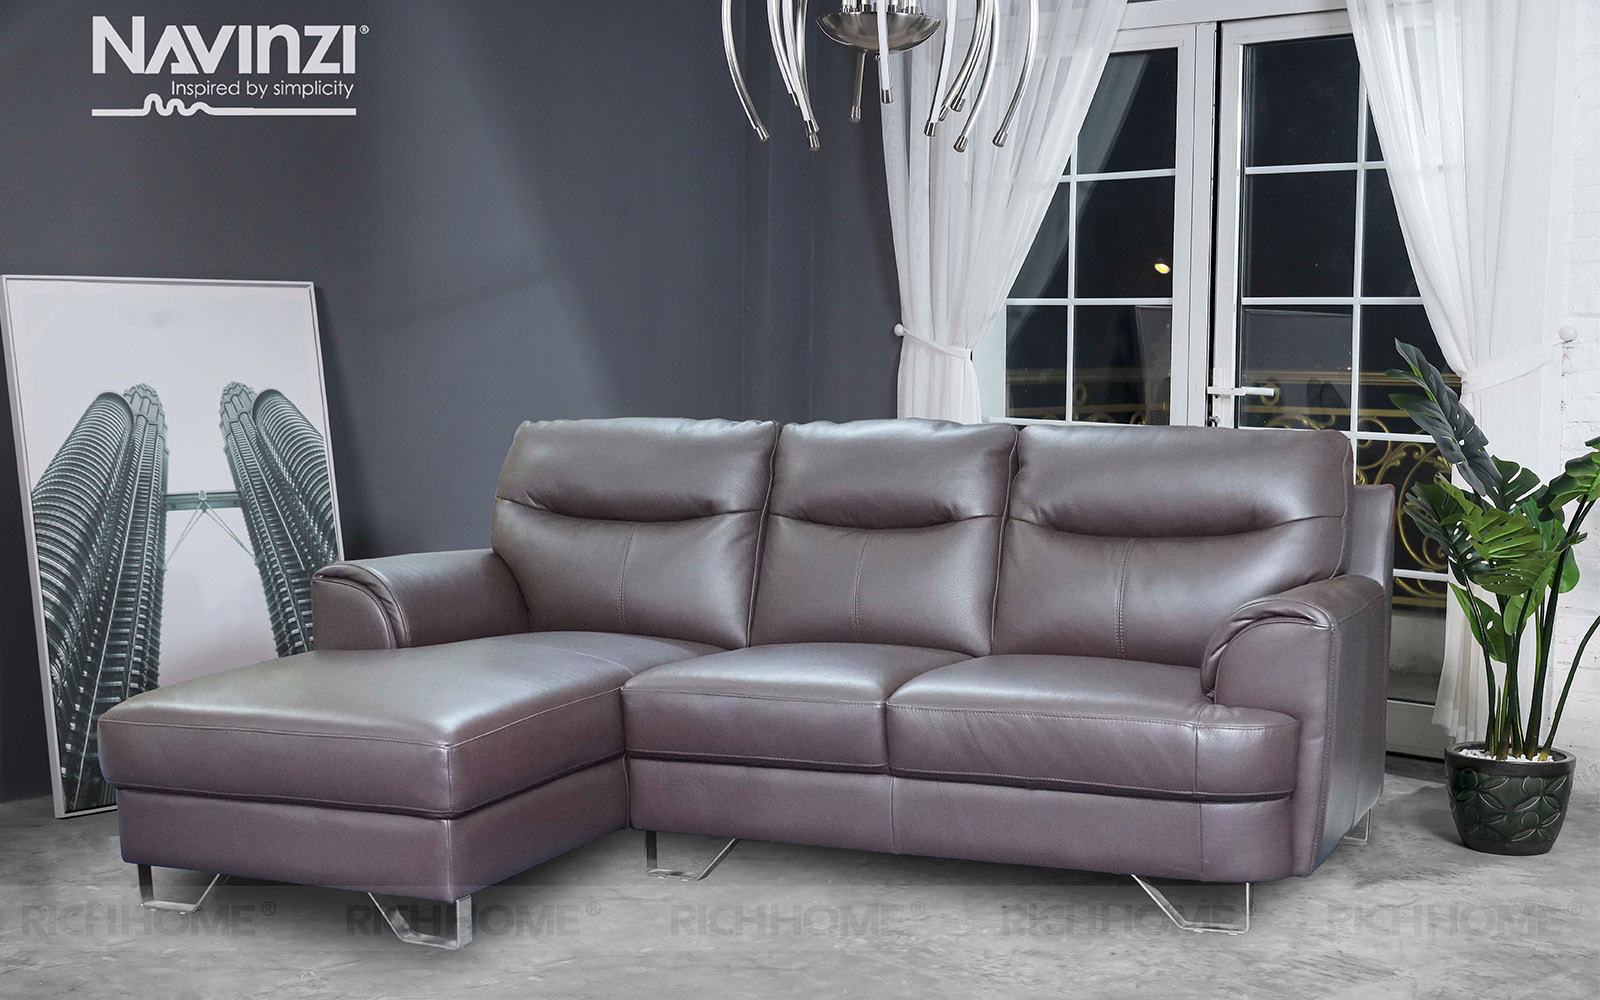 Top 10 mẫu sofa phòng khách nhập khẩu có màu trung tính đẹp - Ảnh 3